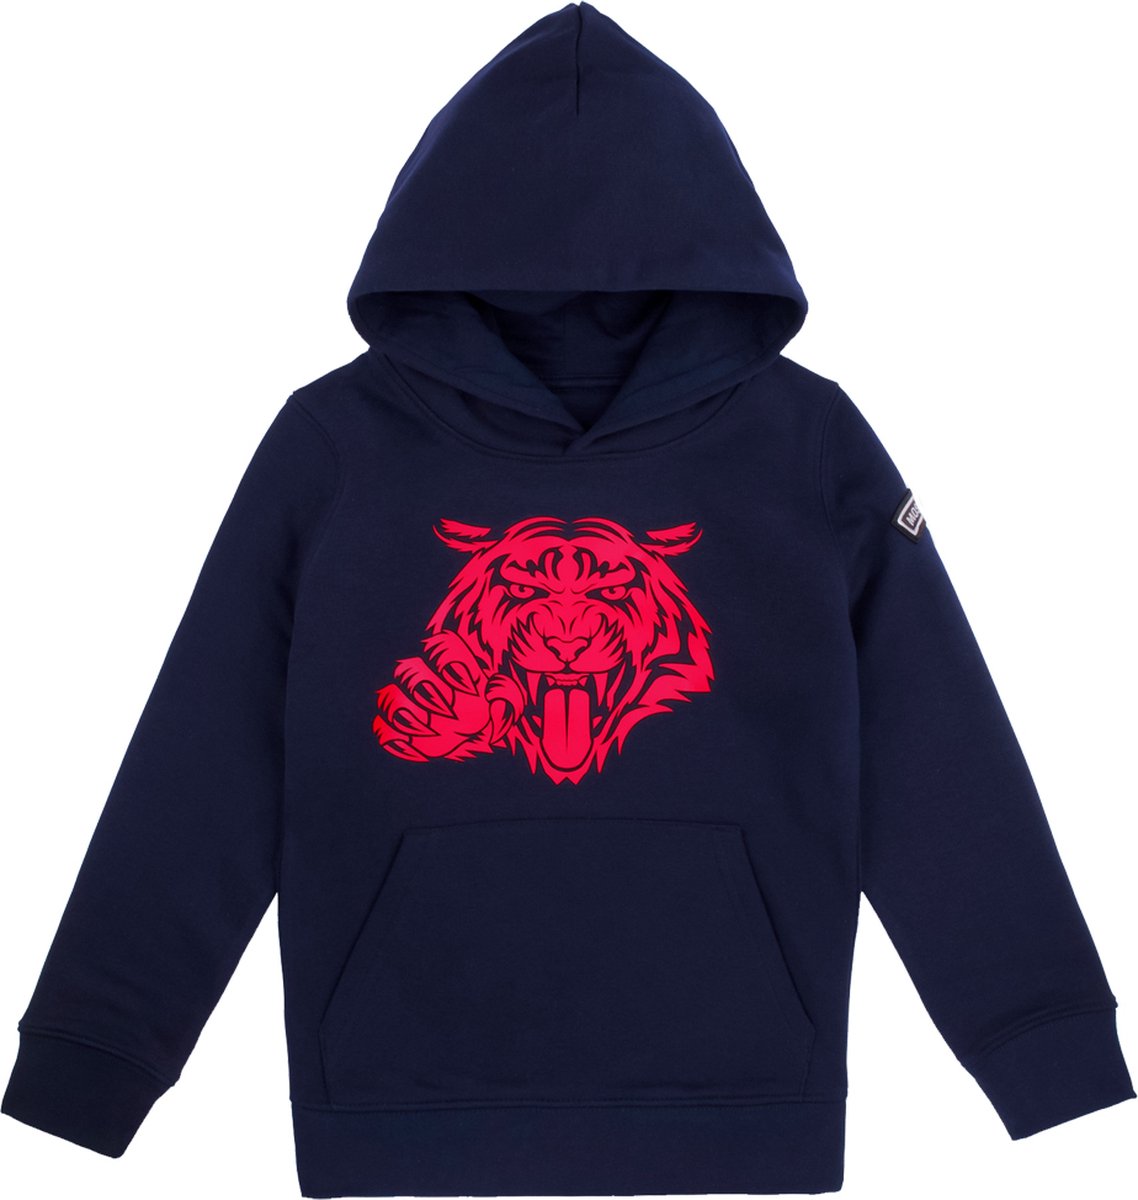 Most Hunted - kinder hoodie - tijger - navy - rood - maat 98/104